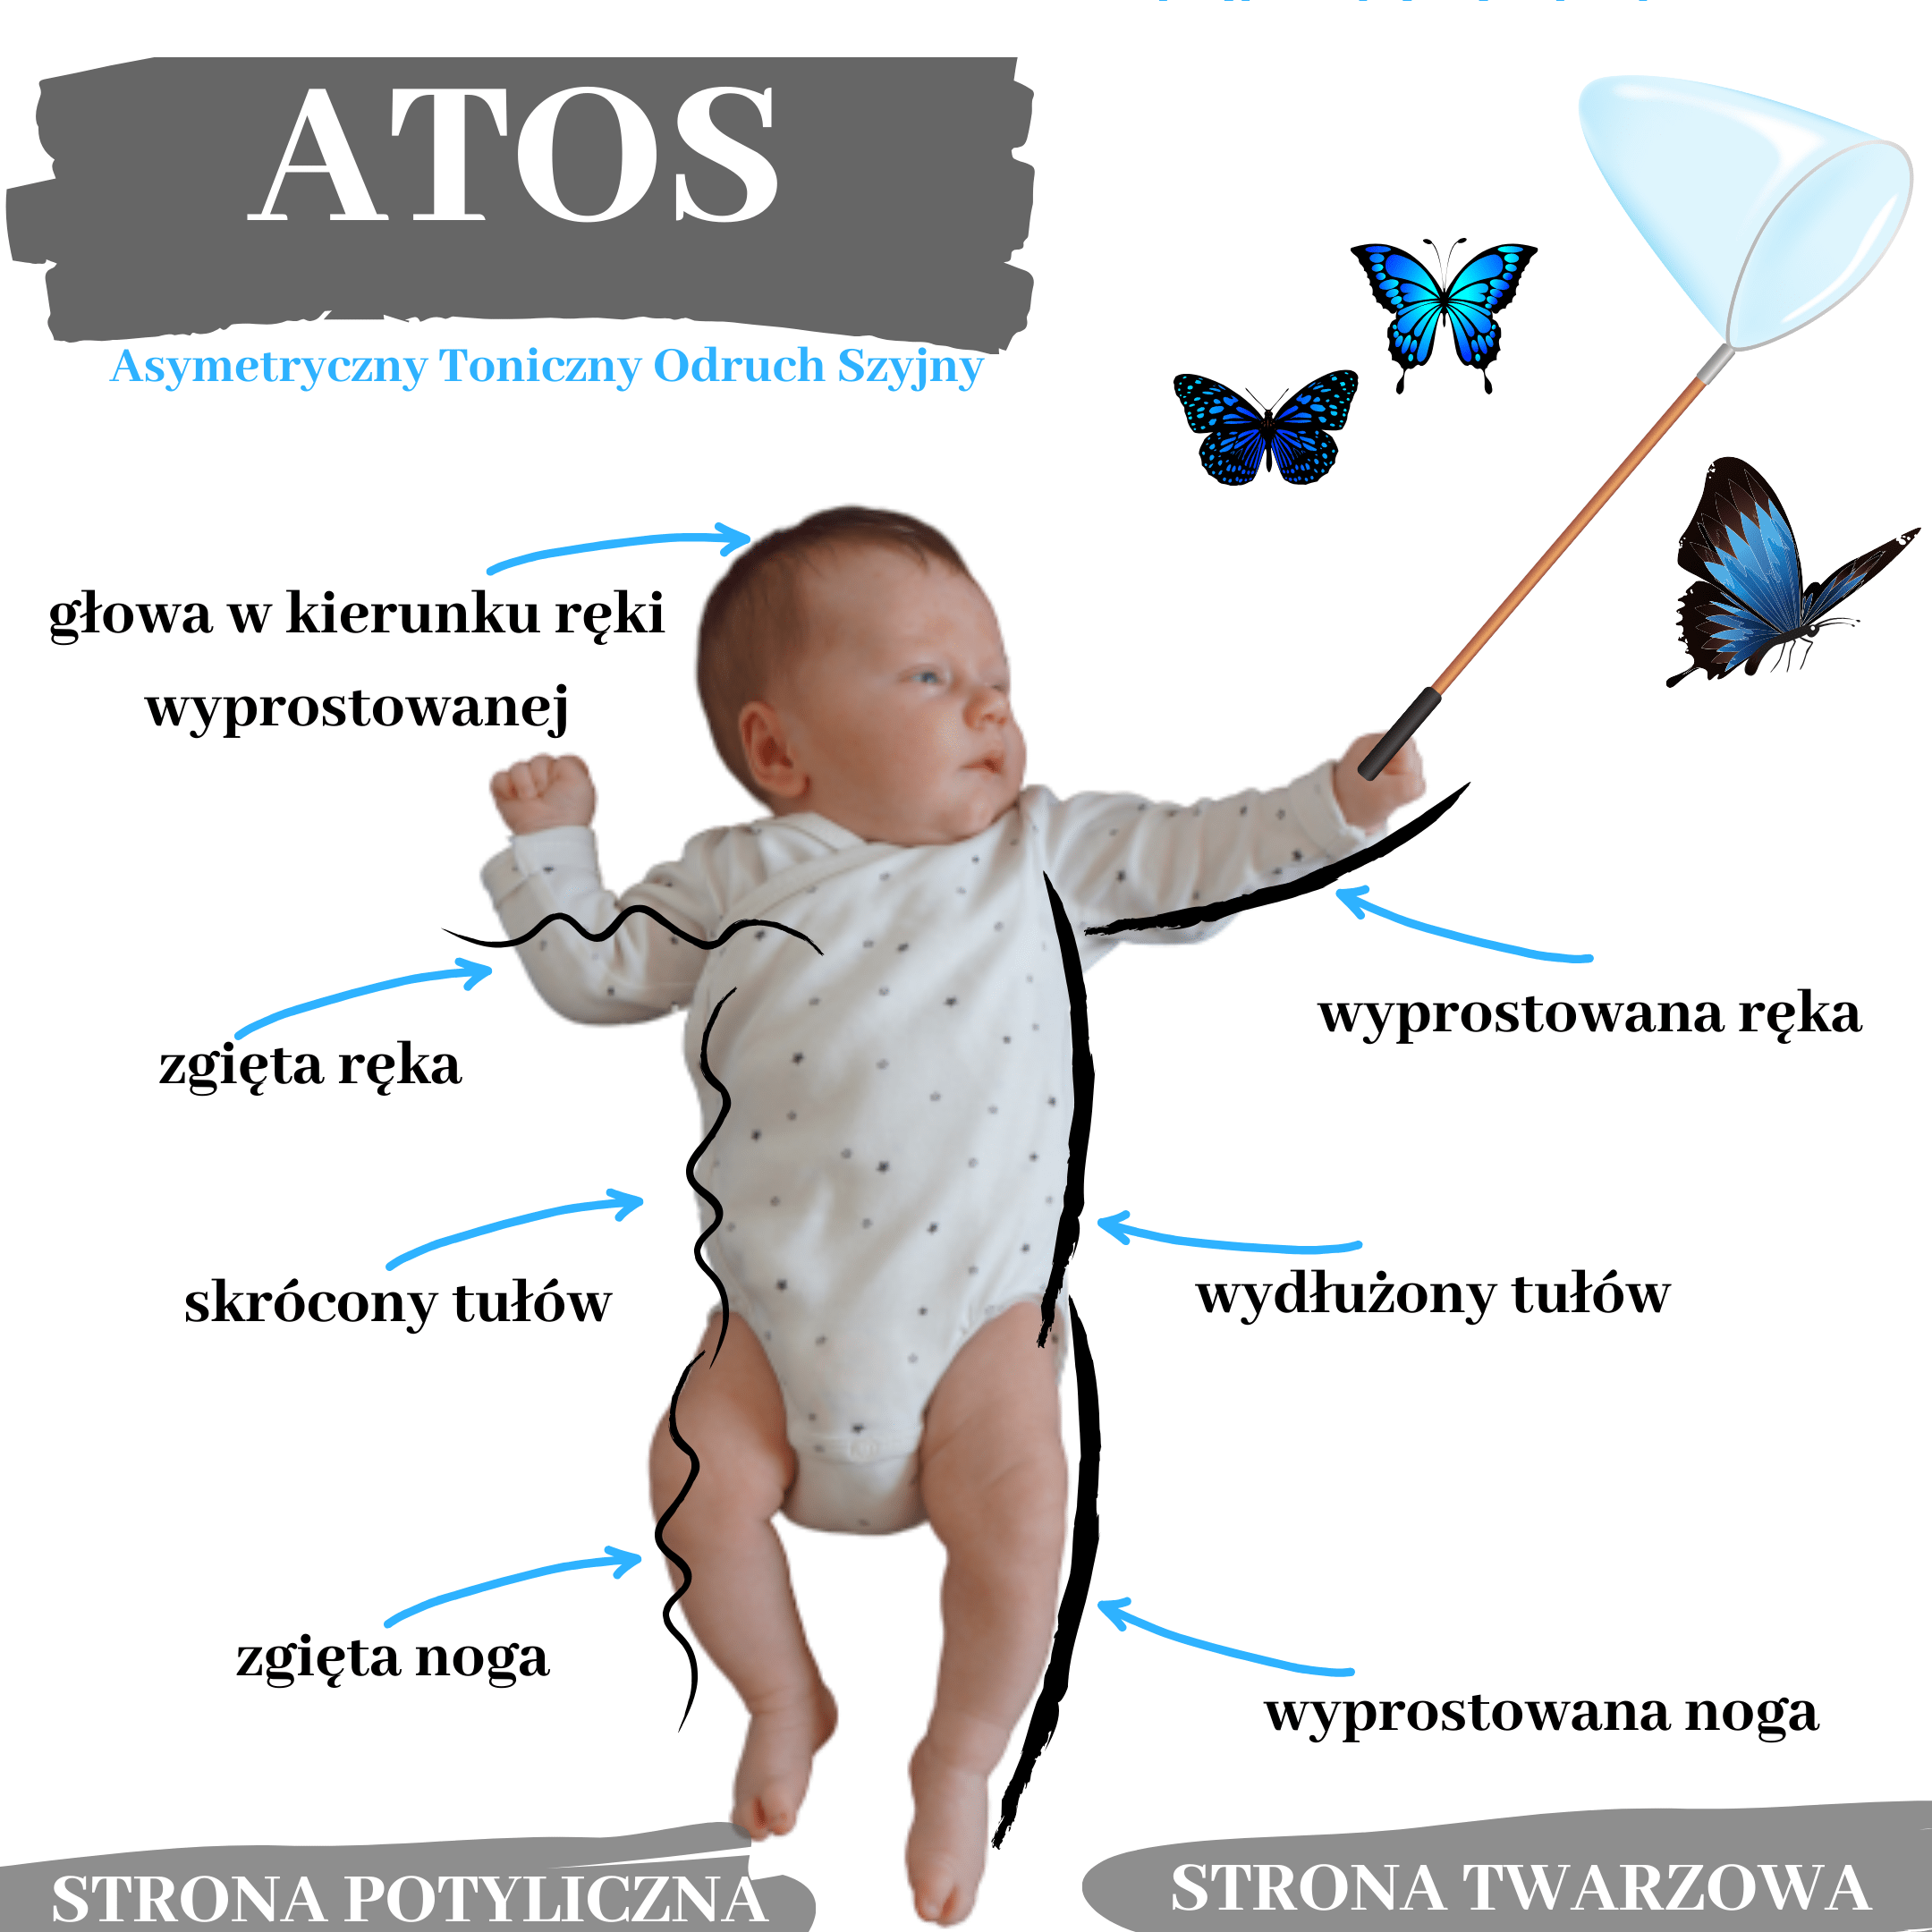 Cechy charakterystyczne odruchu ATOS